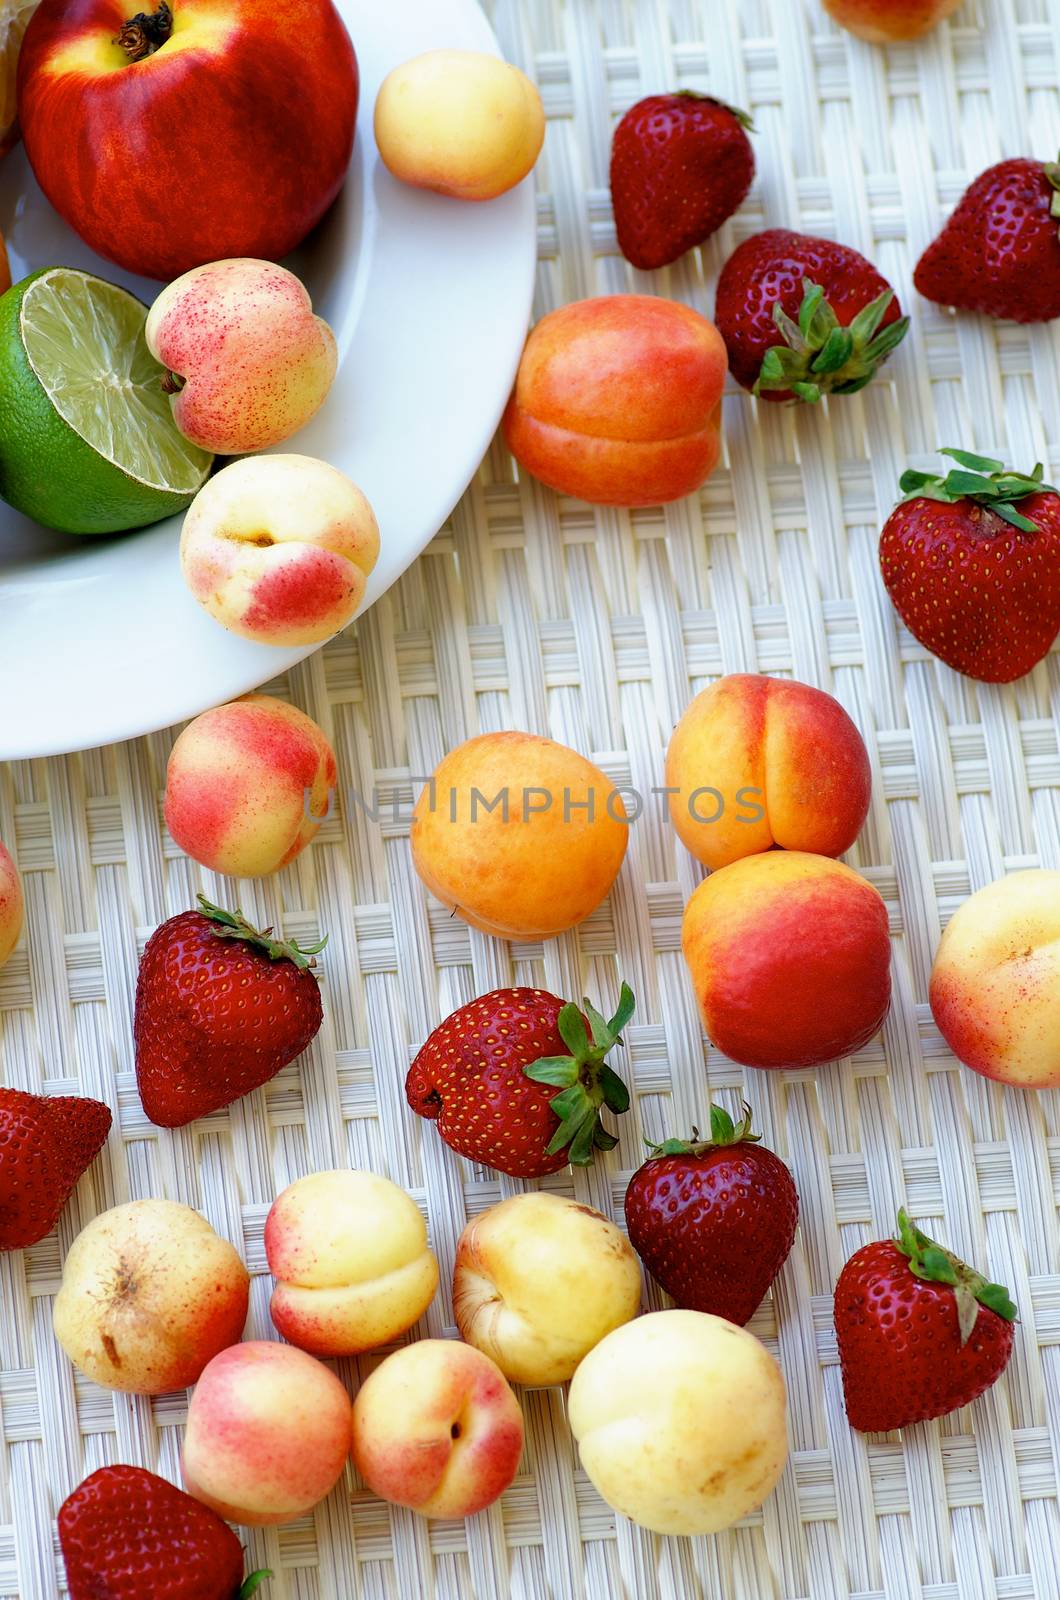 Summer Fruits by zhekos